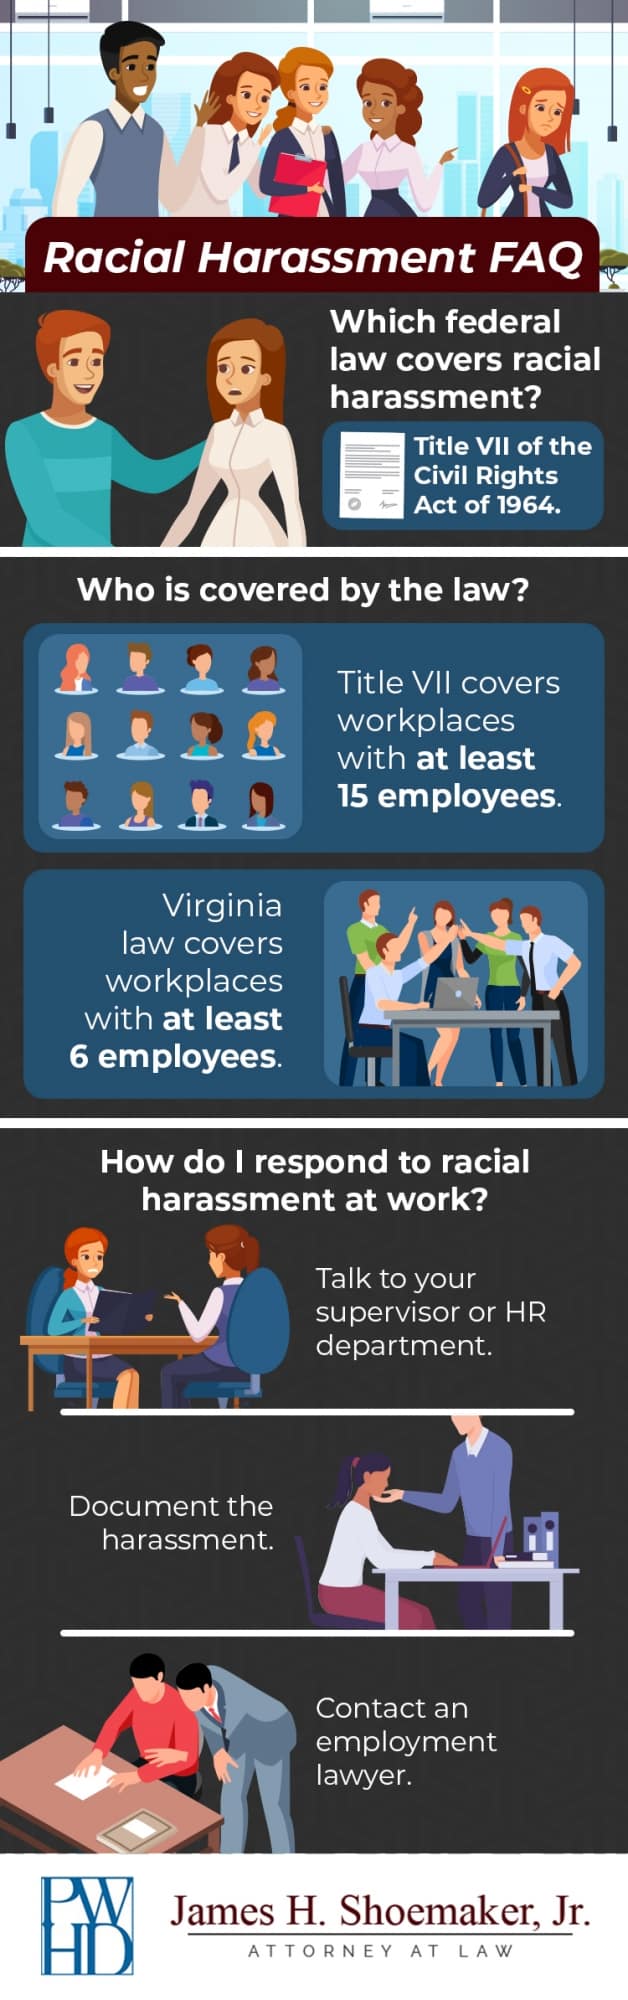 Racial harrasment FAQ